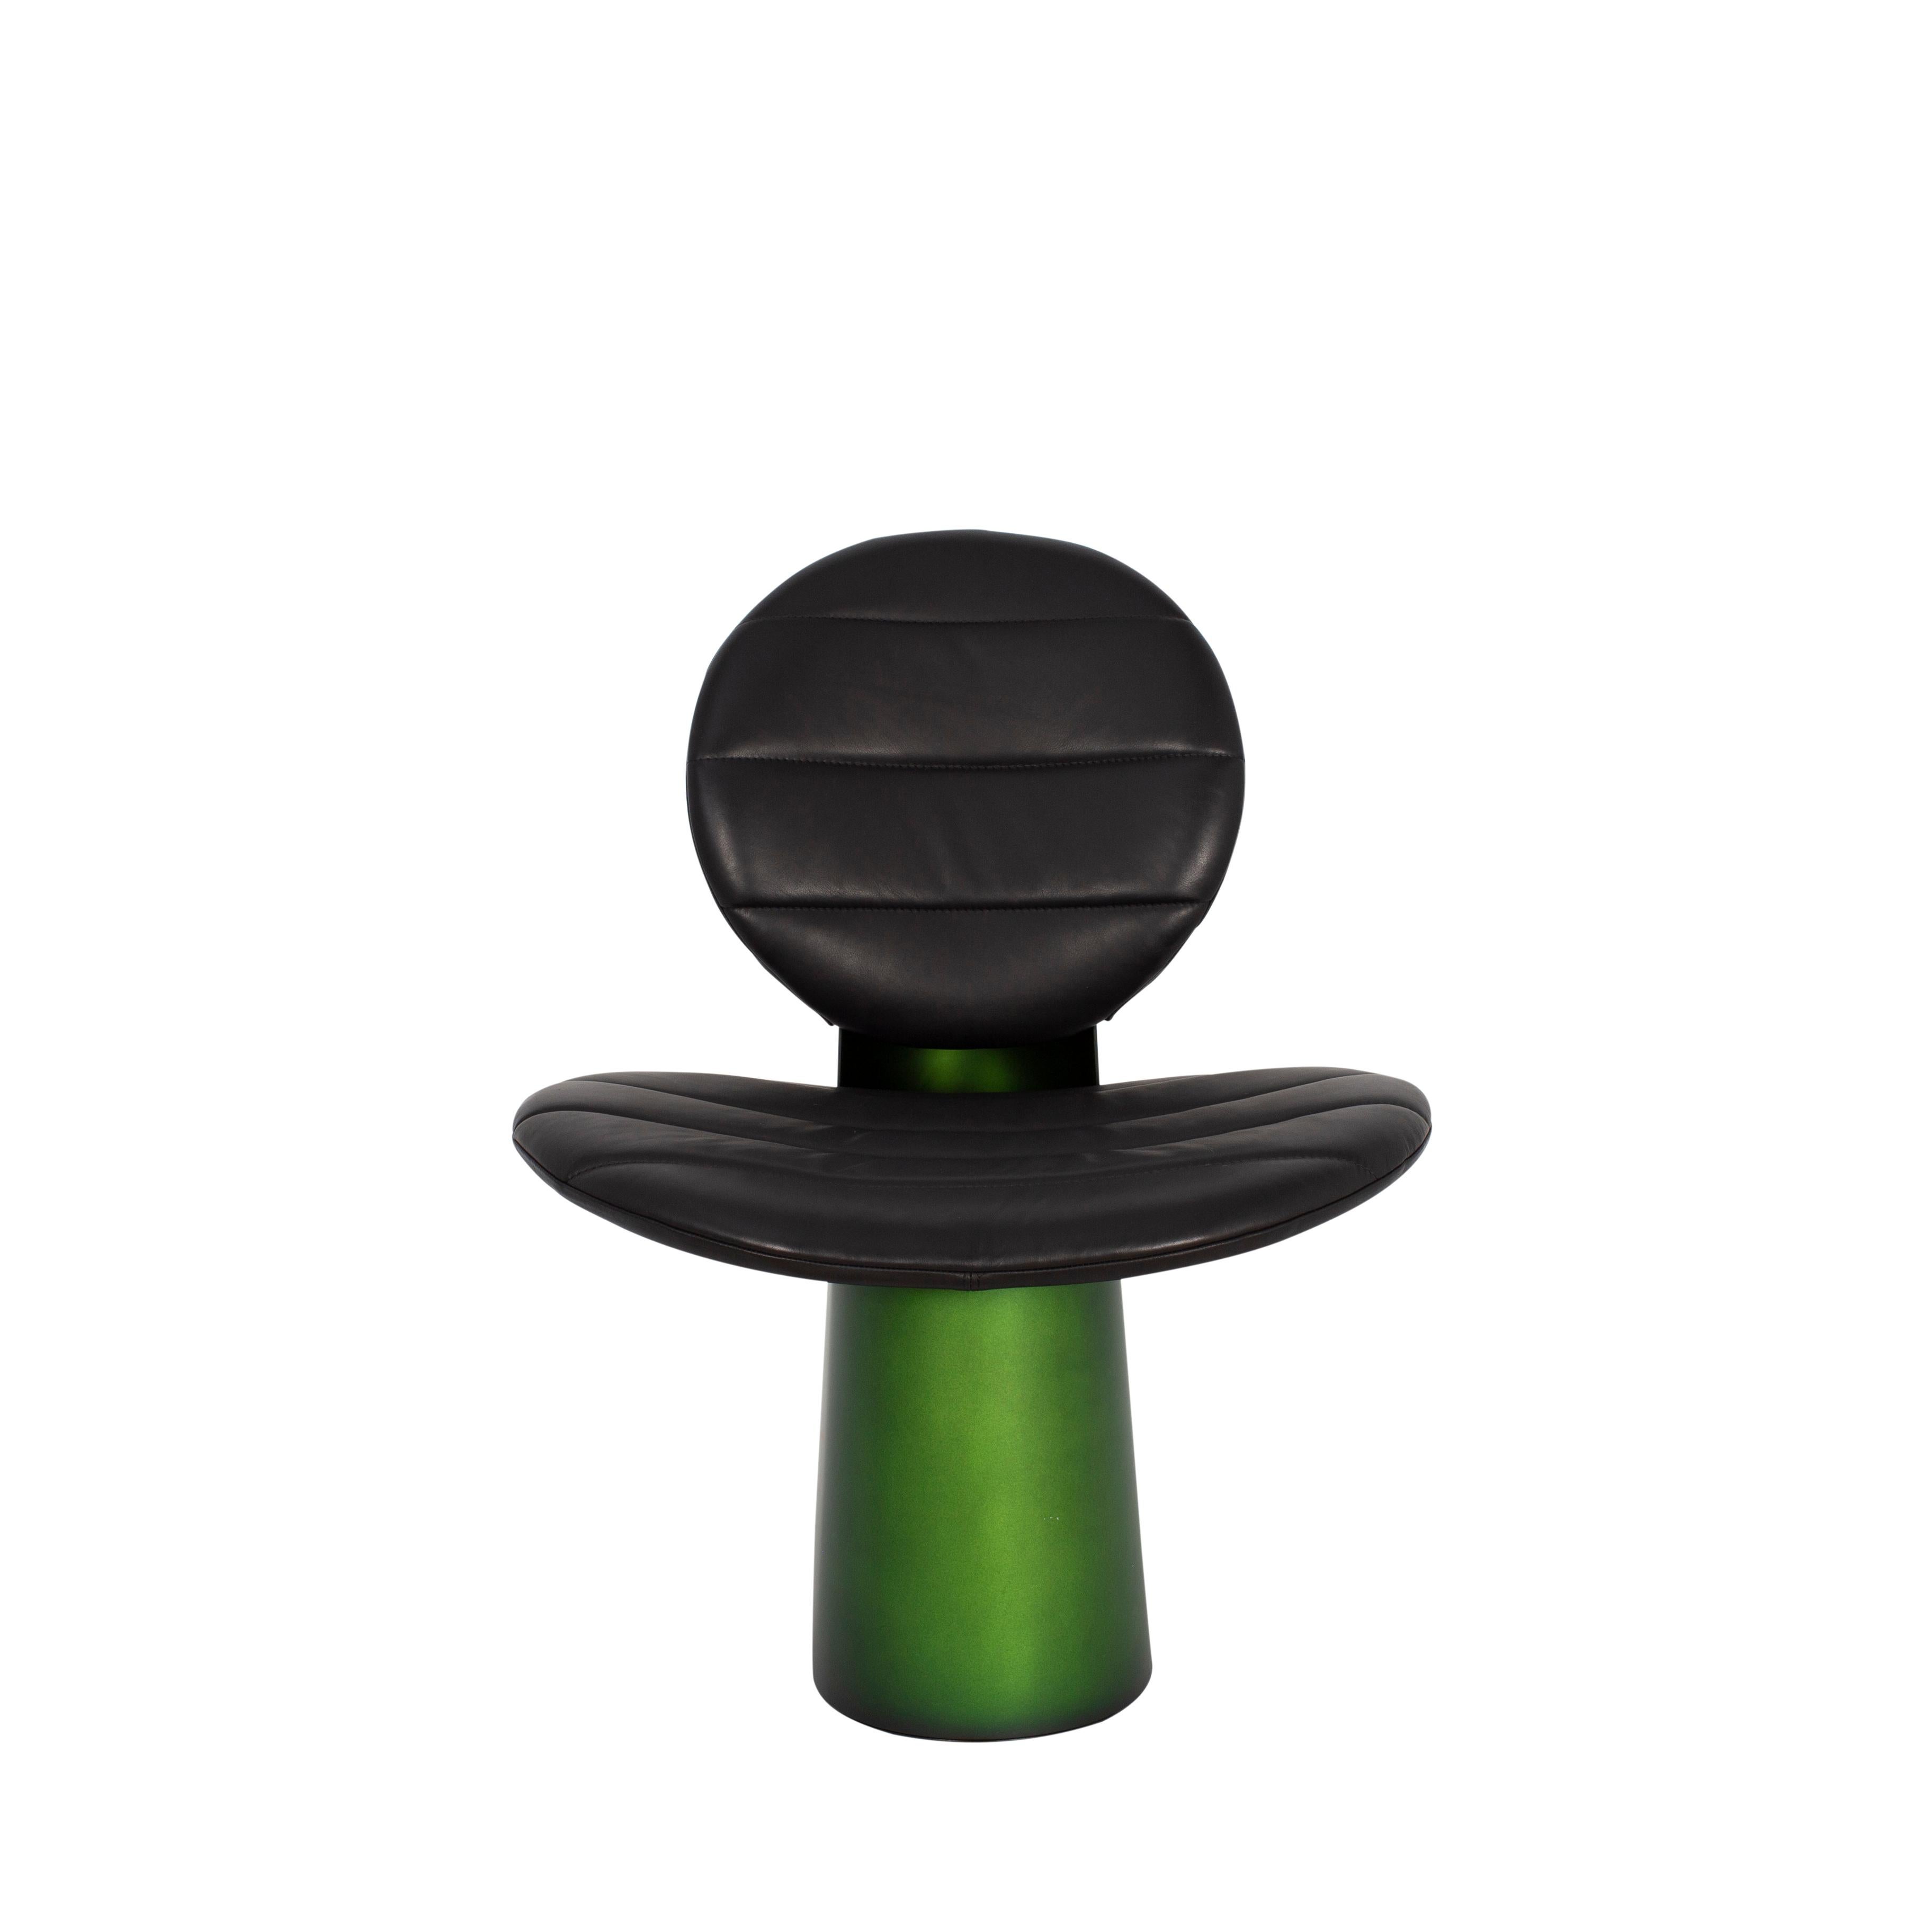 Chaise longue Pilota en cuir noir Fango Green de Pulpo
Dimensions : D65 x L75 x H75 cm
MATERIAL : cuir, Corde, fausse fourrure, laine, métal poudré

Également disponible en différentes couleurs et finitions. Veuillez nous contacter.

En partant